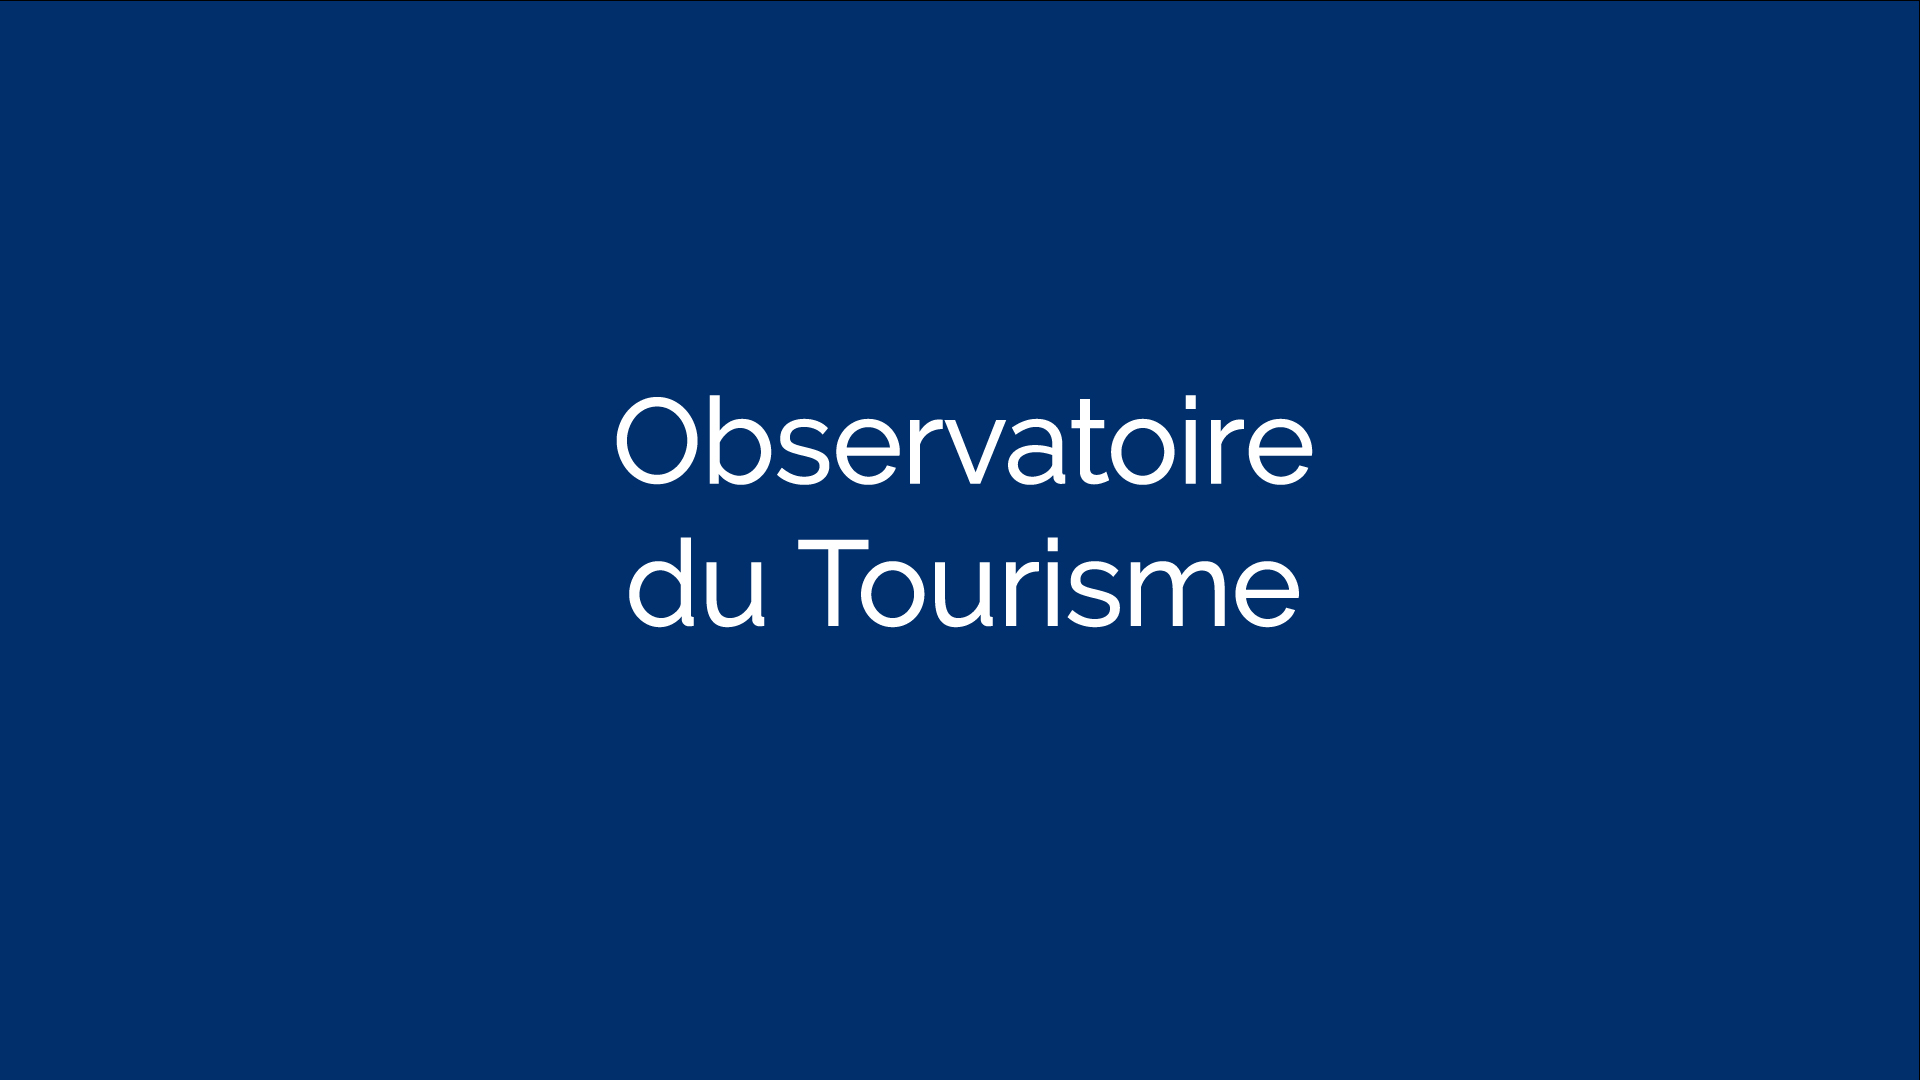 Observatoire du Tourisme